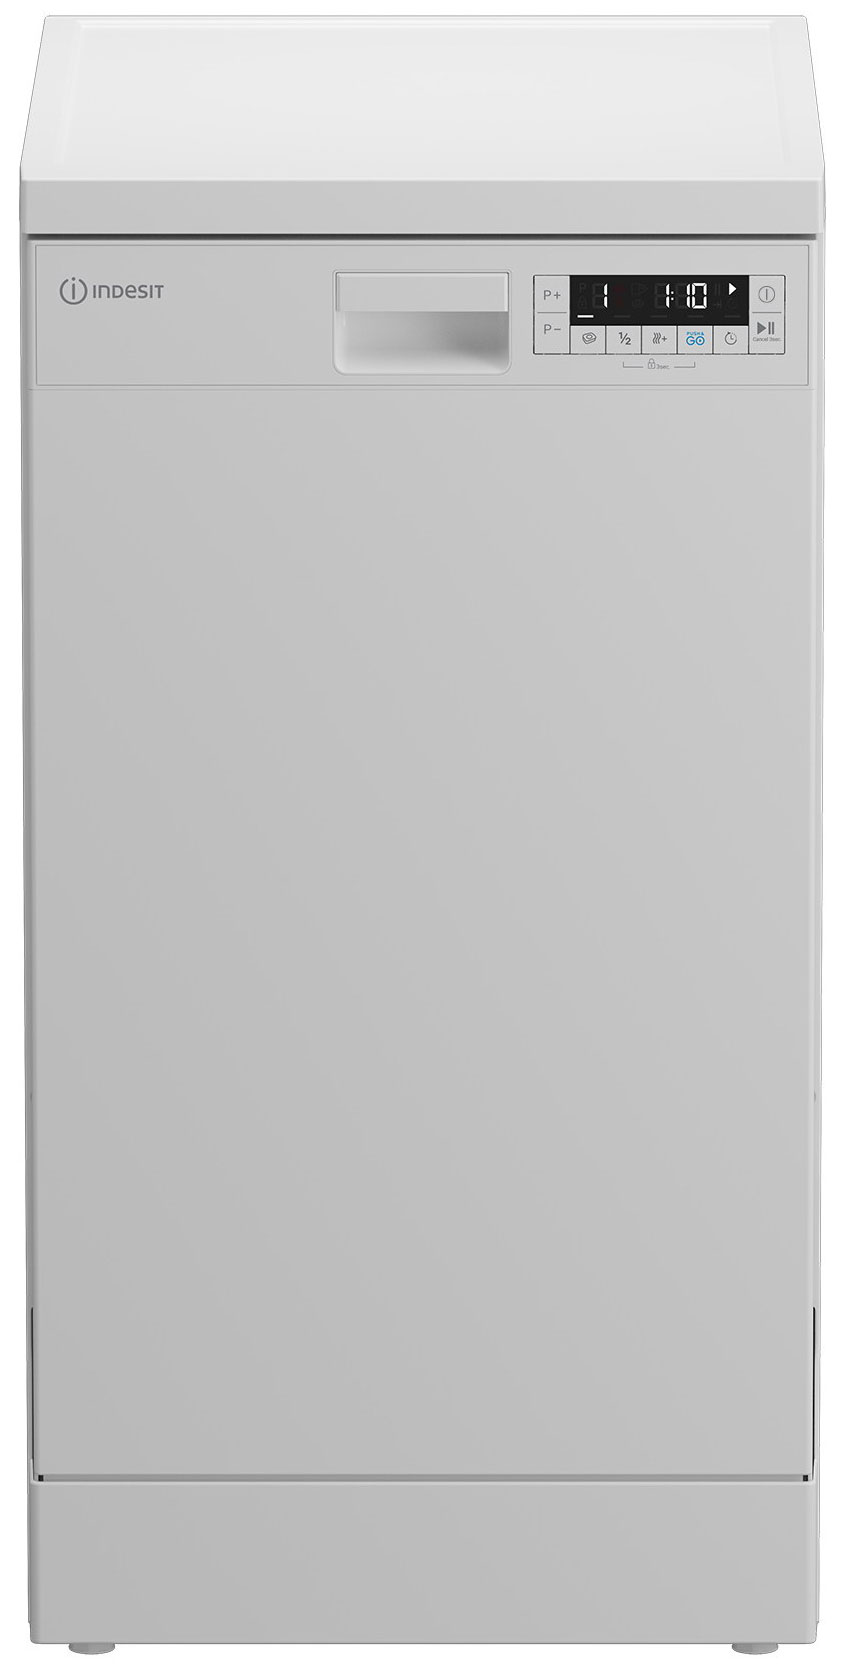 Посудомоечная машина Indesit DFS 1C67 посудомоечная машина indesit dfs 1c67 узкая напольная 44 8см загрузка 10 комплектов белая [869894100030]